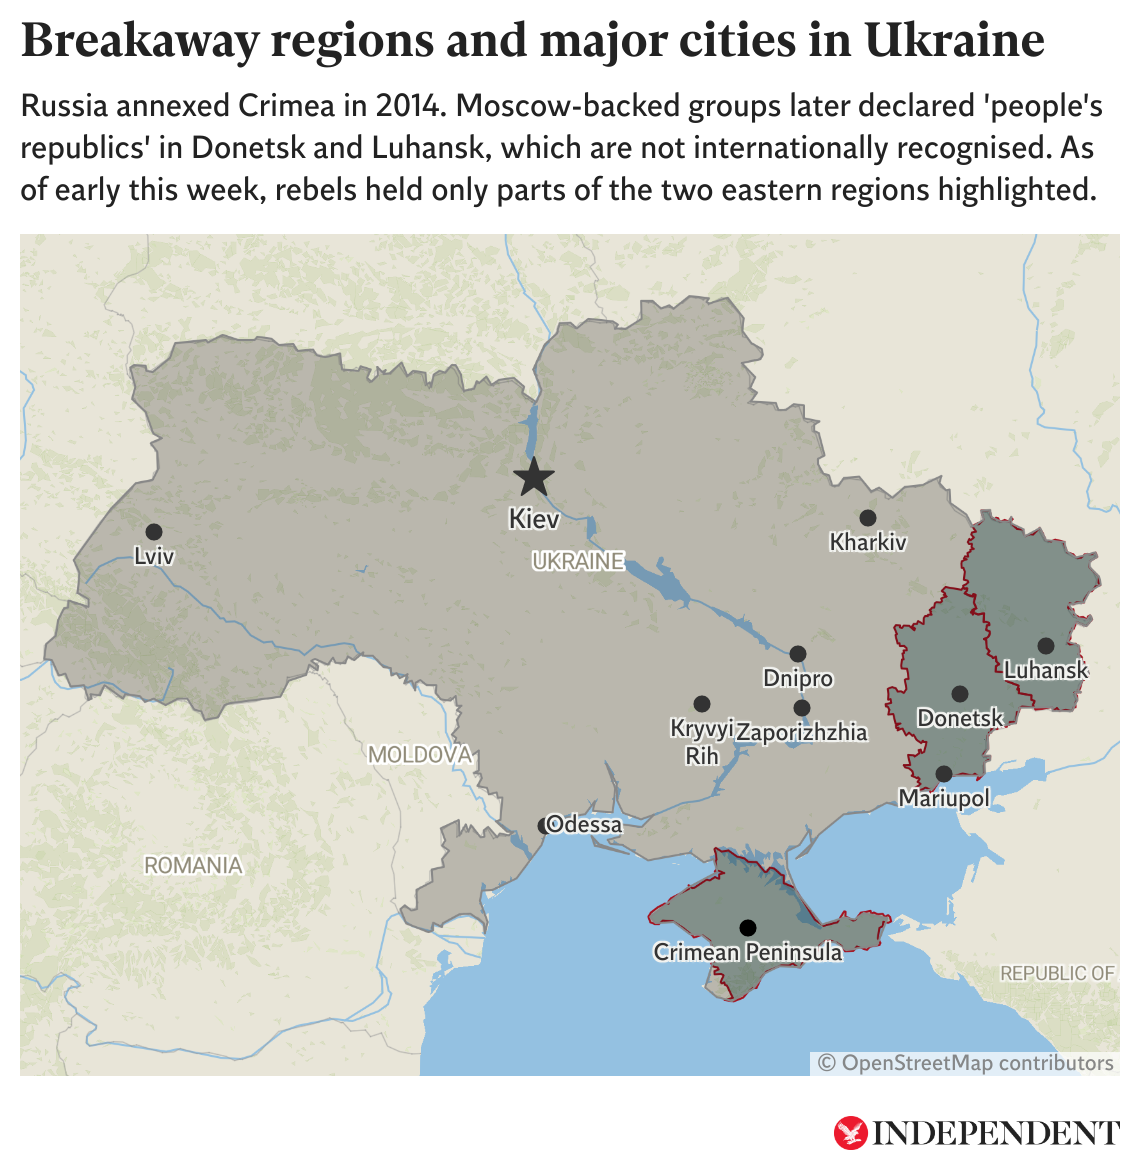 Este mapa muestra las ciudades principales de Ucrania, así como las regiones separatistas respaldadas por Moscú. A inicios de la semana, los rebeldes ocuppaban solo las partes resaltadas de las regiones de Donetsk y Luhansk